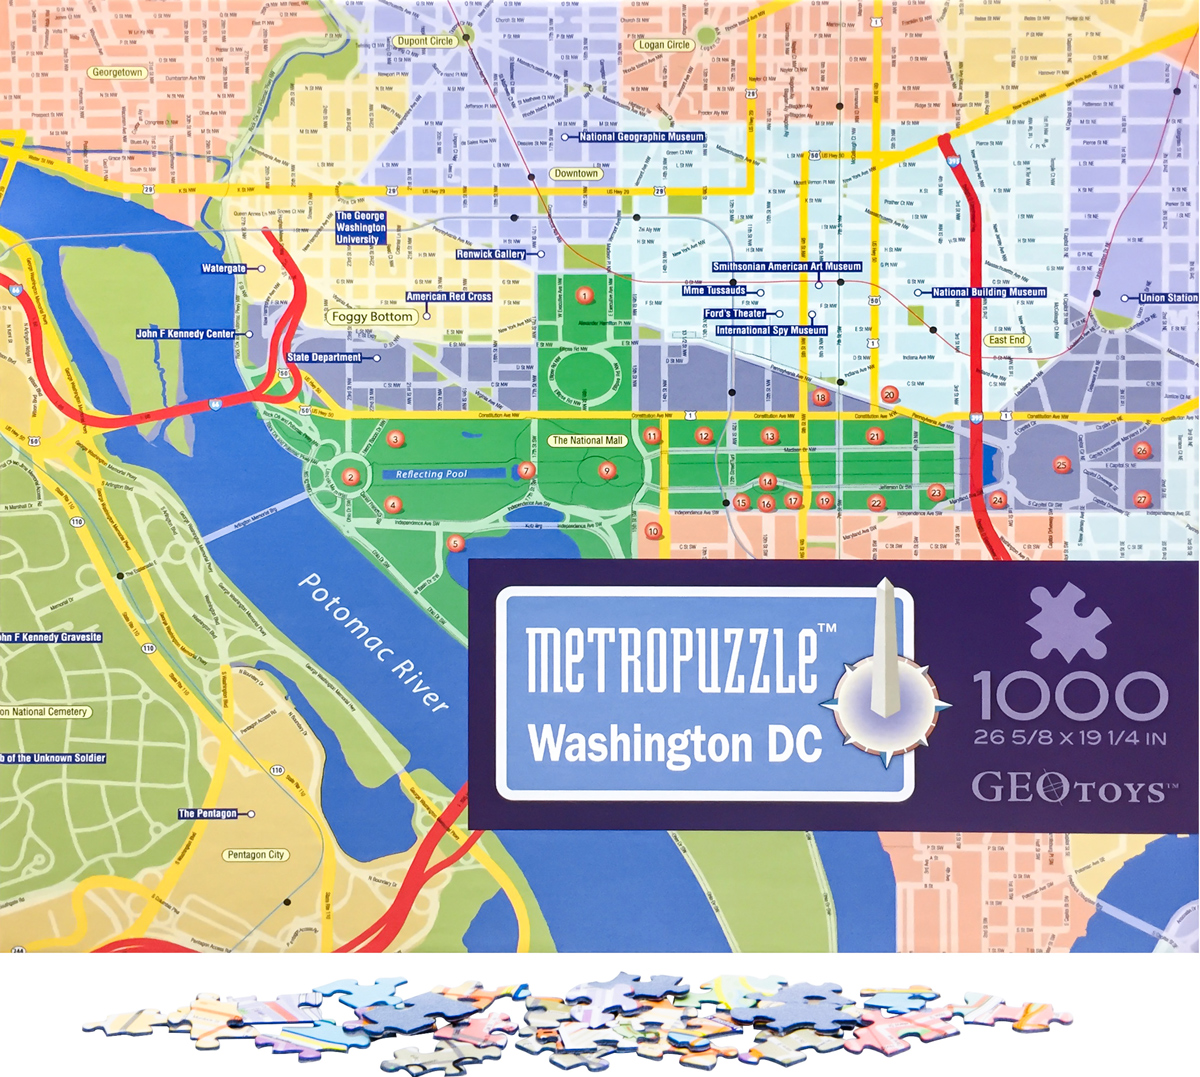 Washington, DC MetroPuzzle Travel Jigsaw Puzzle